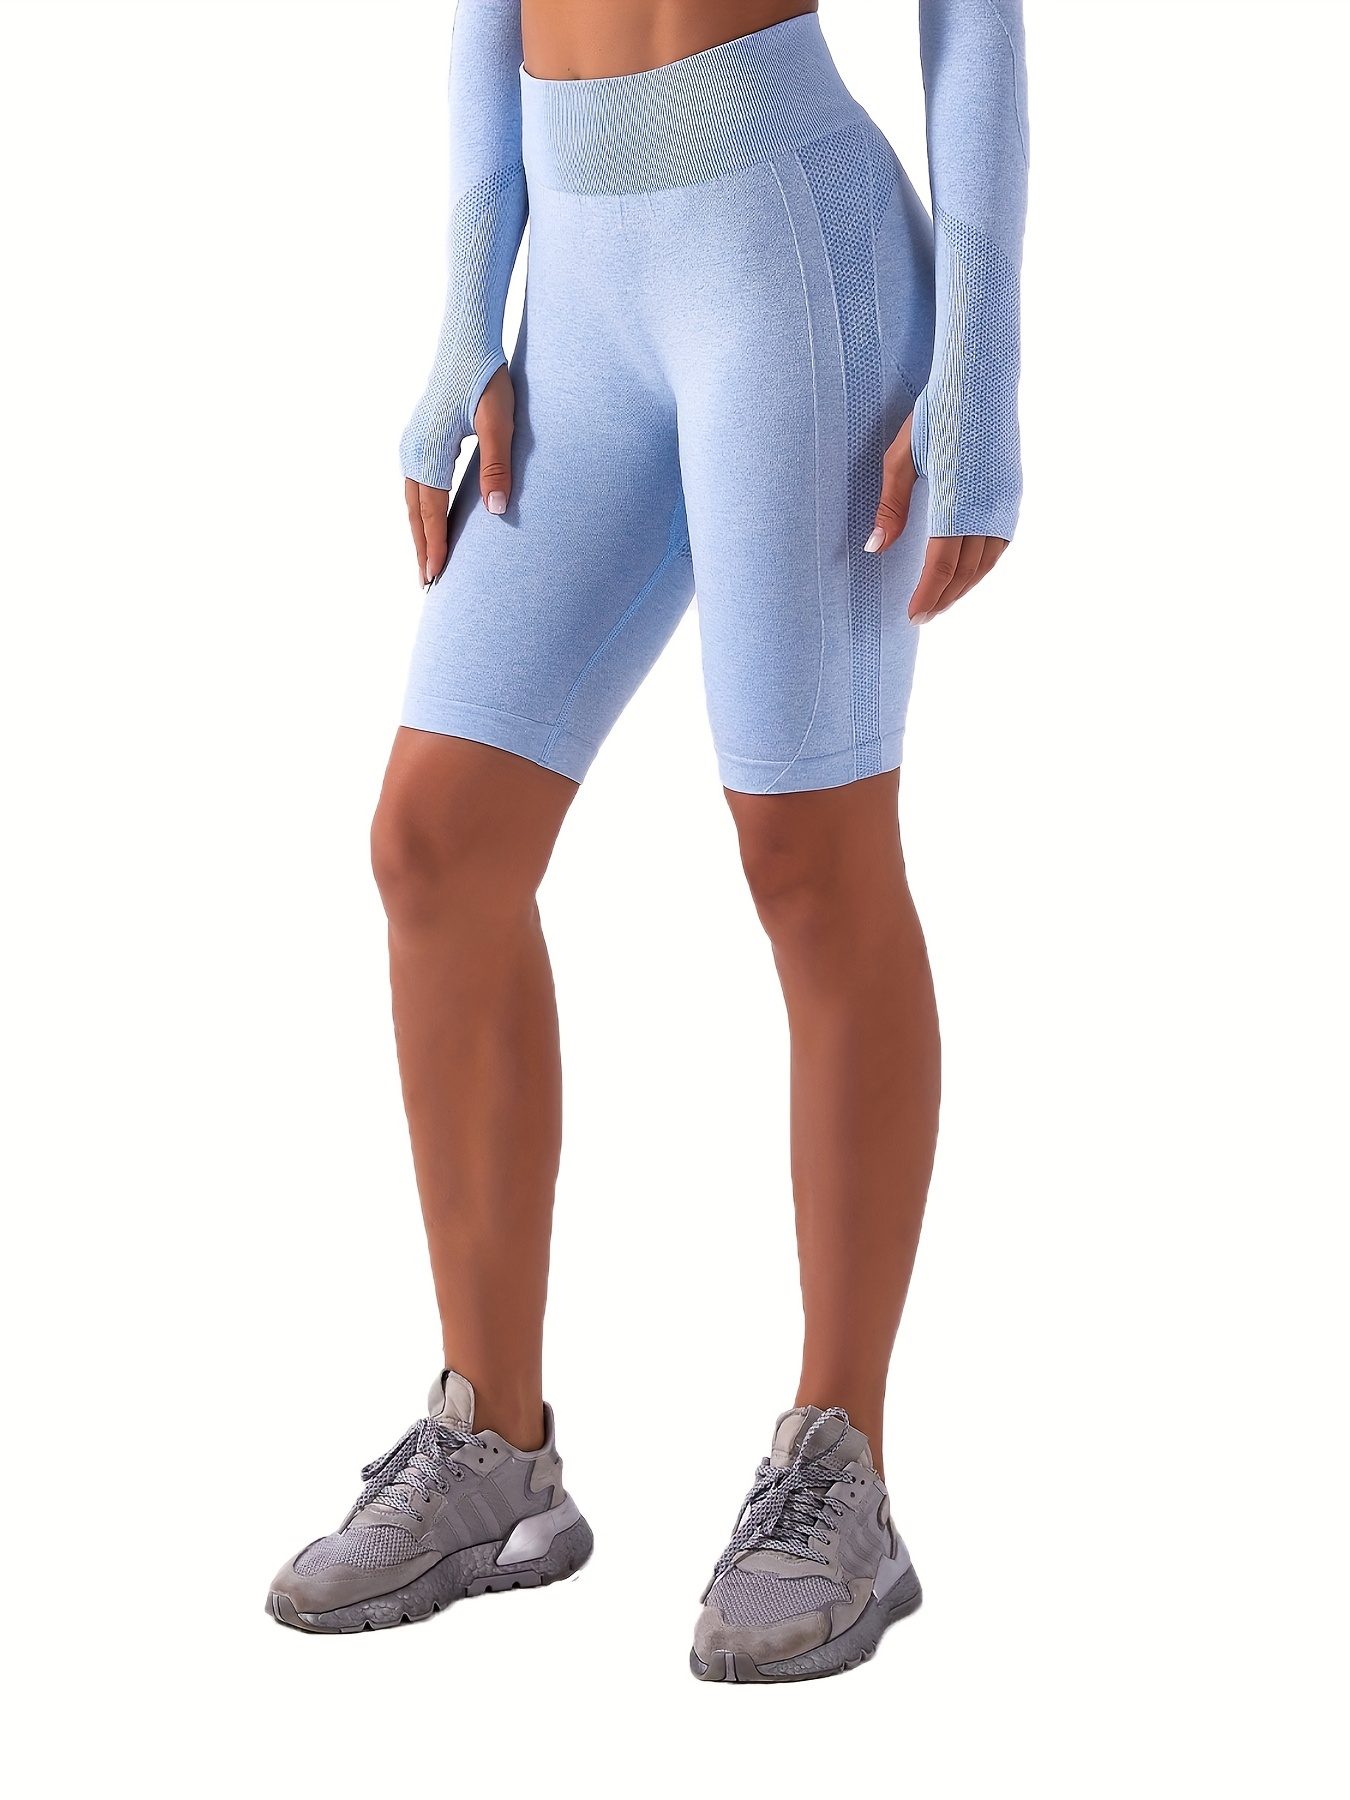 Workout Shorts For Women, High Waist Running Scrunch Gym Yoga Biker Shorts,  Women's Activewear